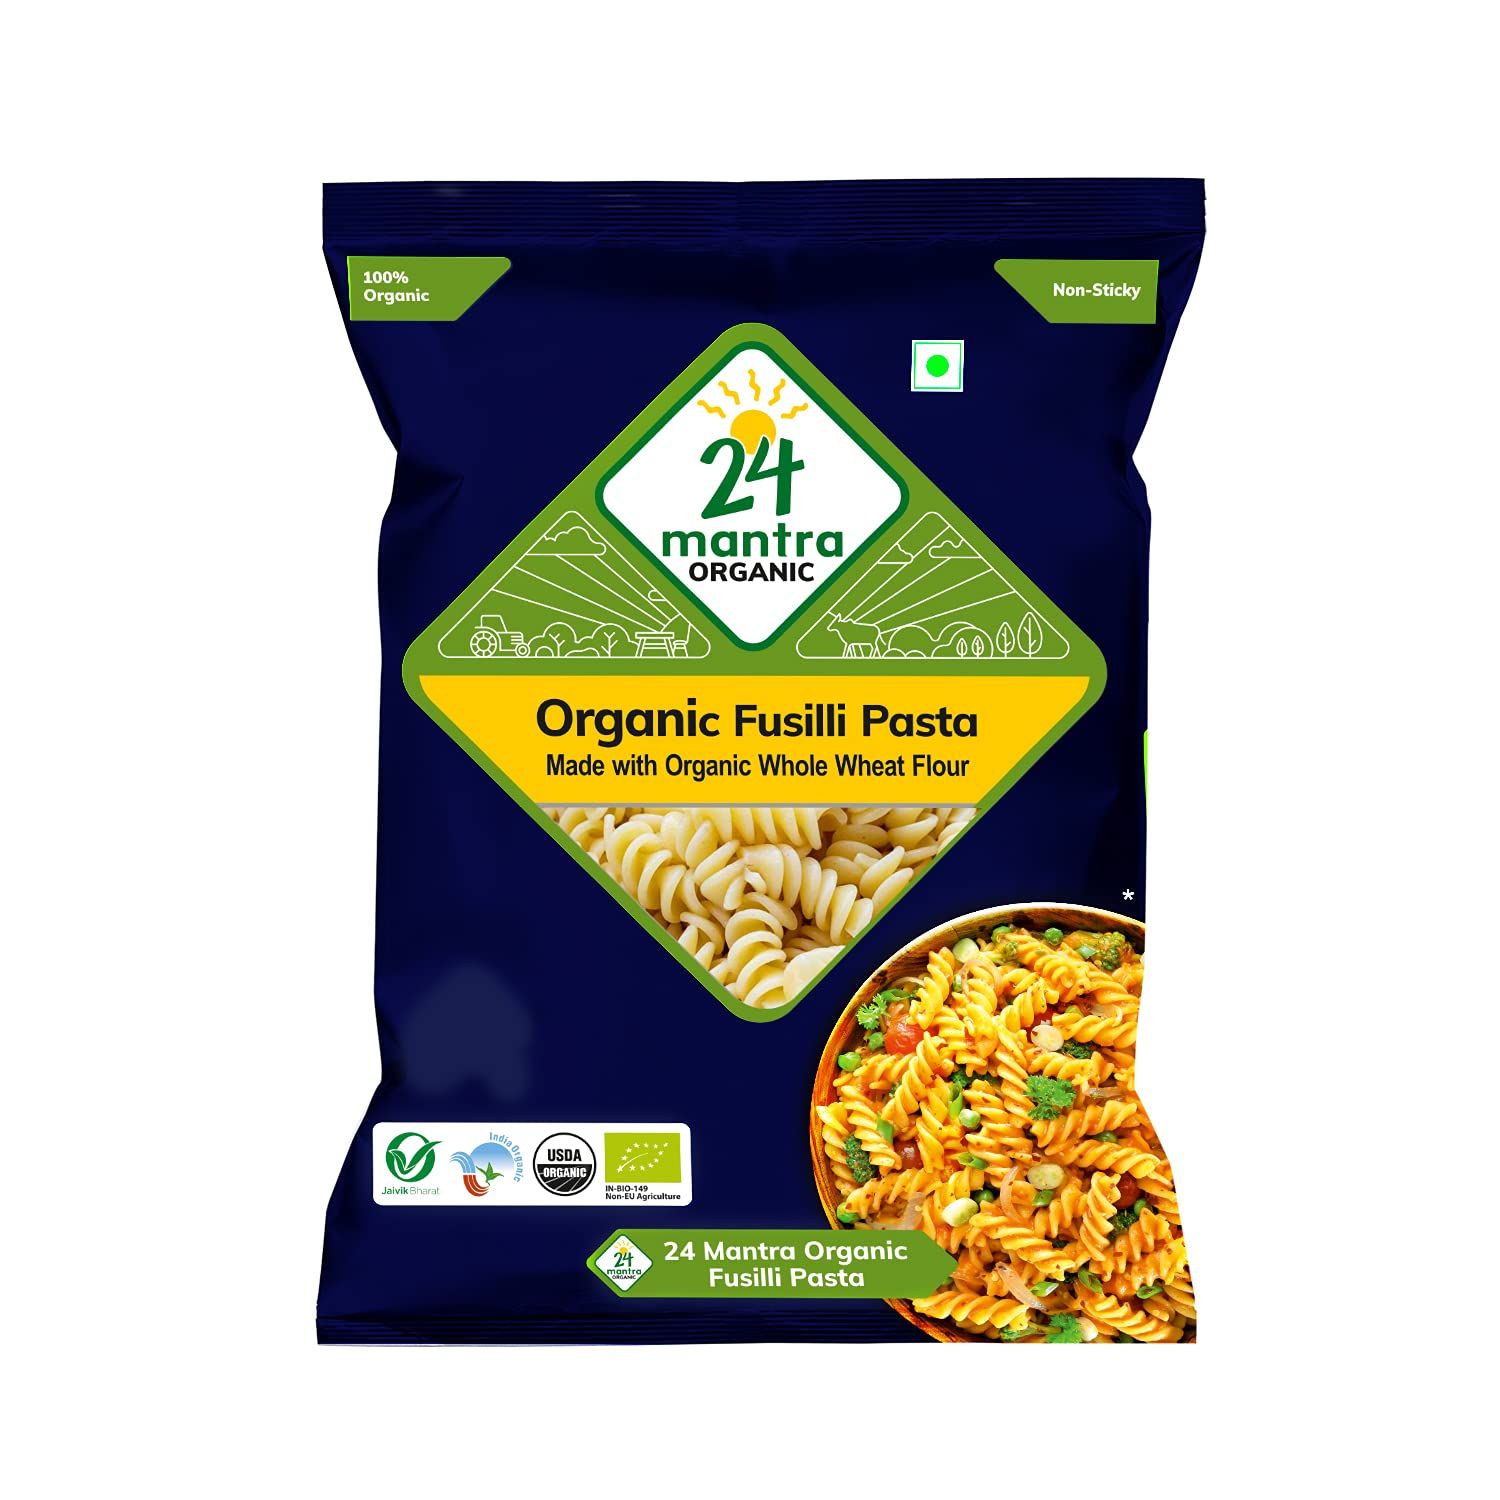 24 Mantra Organic Wholewheat Fusili Pasta Image